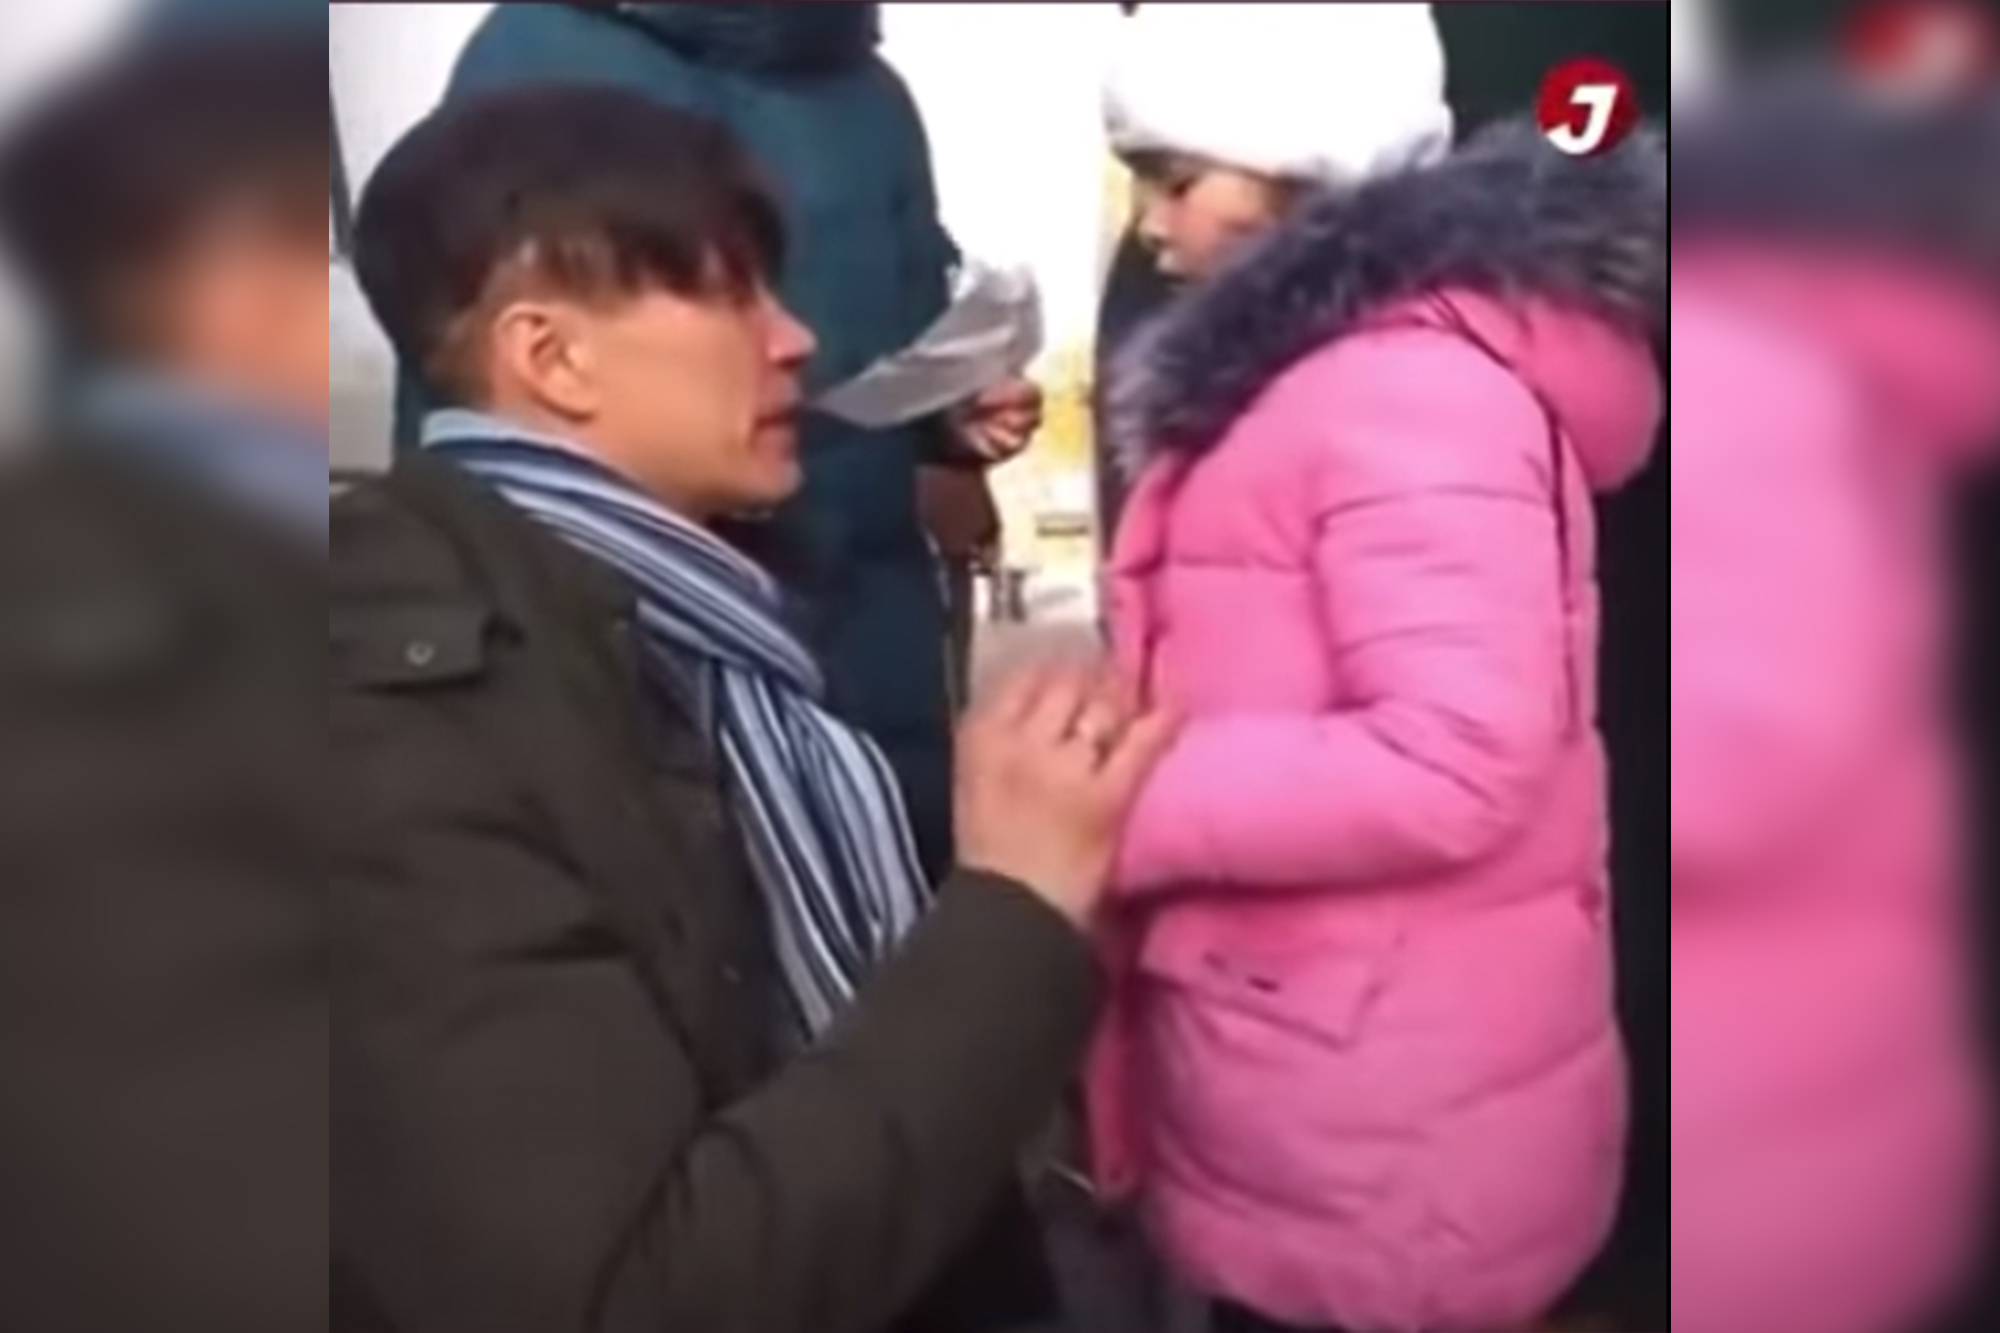 Chiến sự Ukraine: Video ông bố bật khóc tiễn con gái nhỏ đi sơ tán khiến nhiều người xúc động - Ảnh 4.